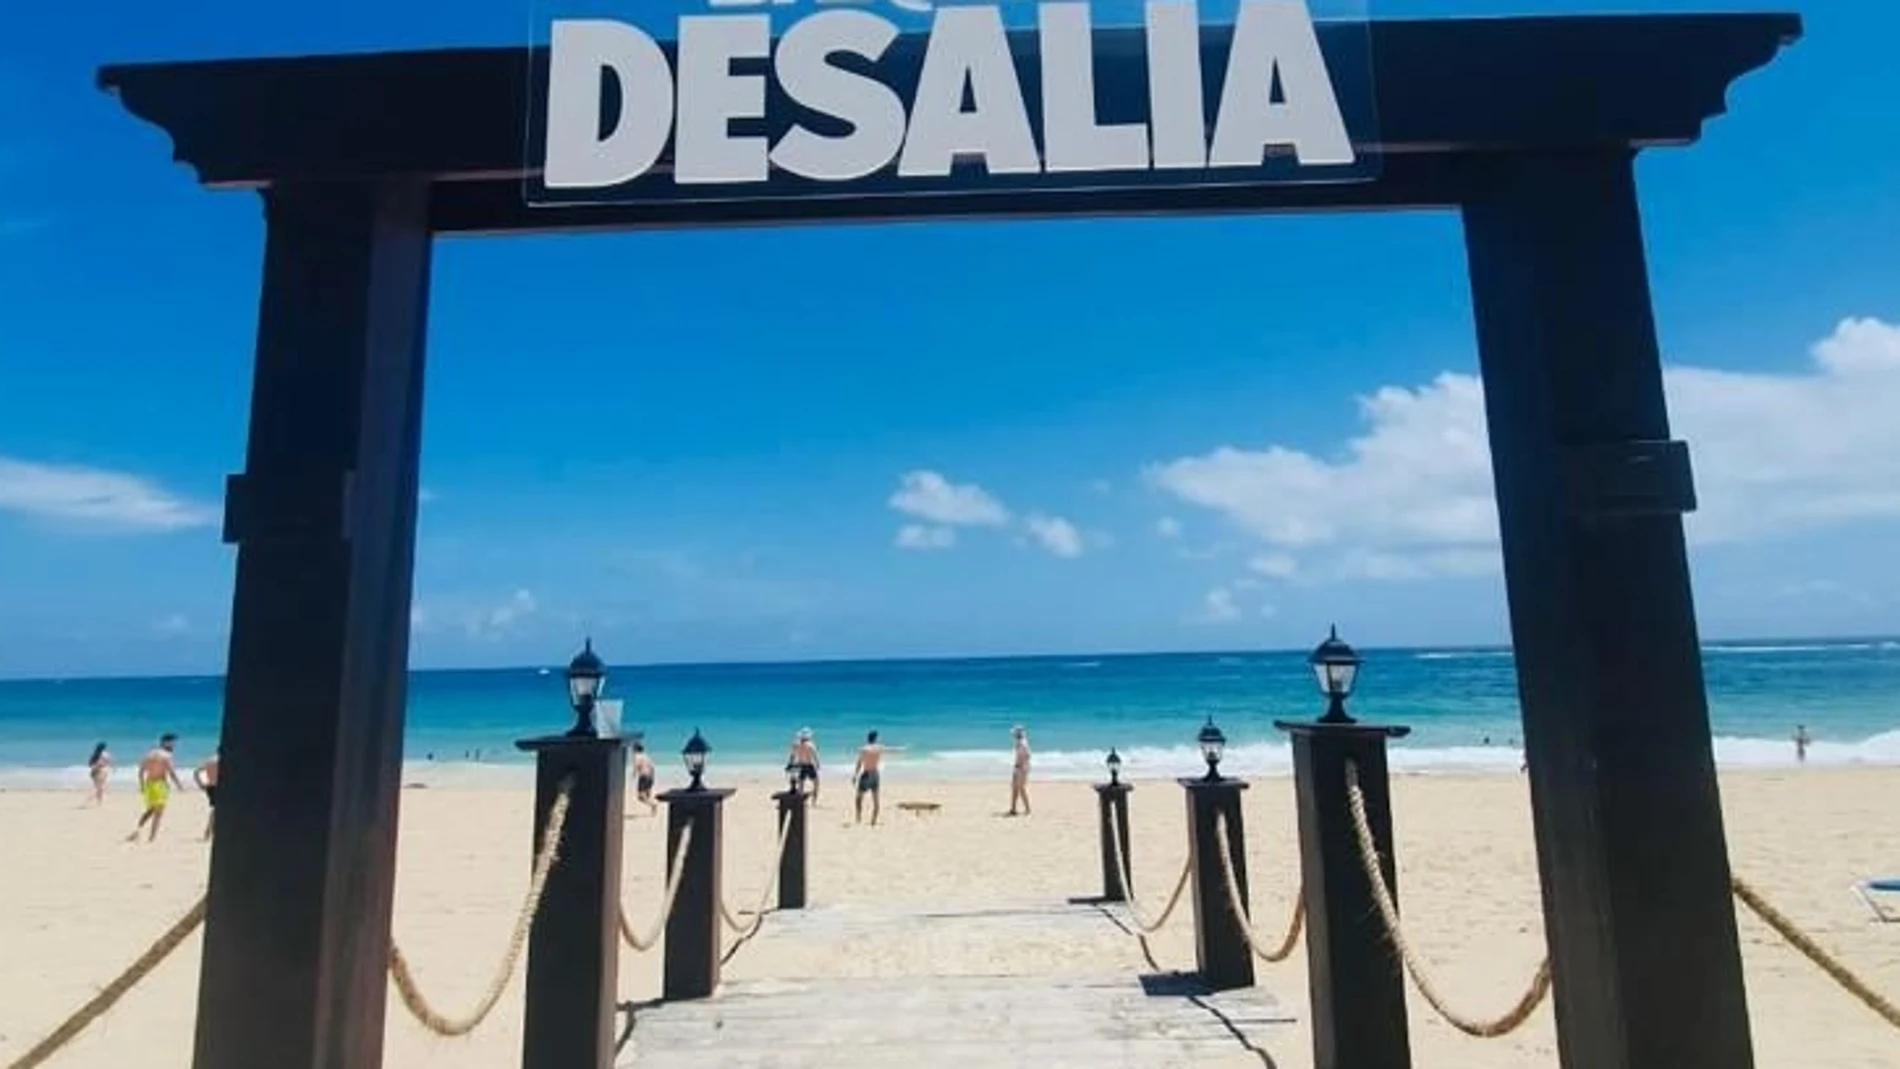 Desalia 2022 se celebra en Punta Cana, en las playas de República Dominicana